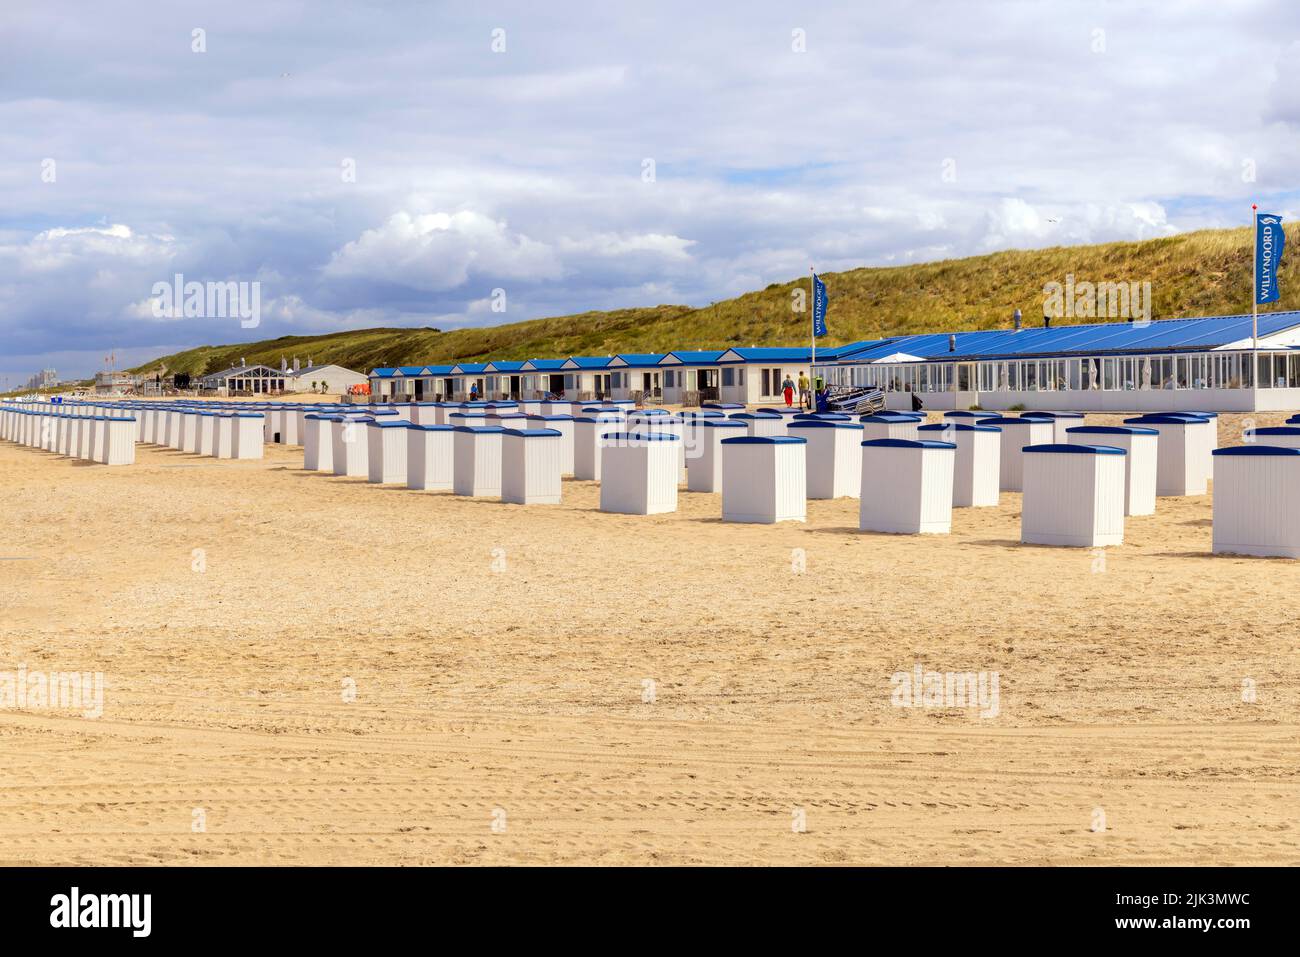 Pabellones de playa y cabañas a lo largo de la costa del Mar del Norte en Katwijk, Holanda del Sur, Países Bajos. Foto de stock